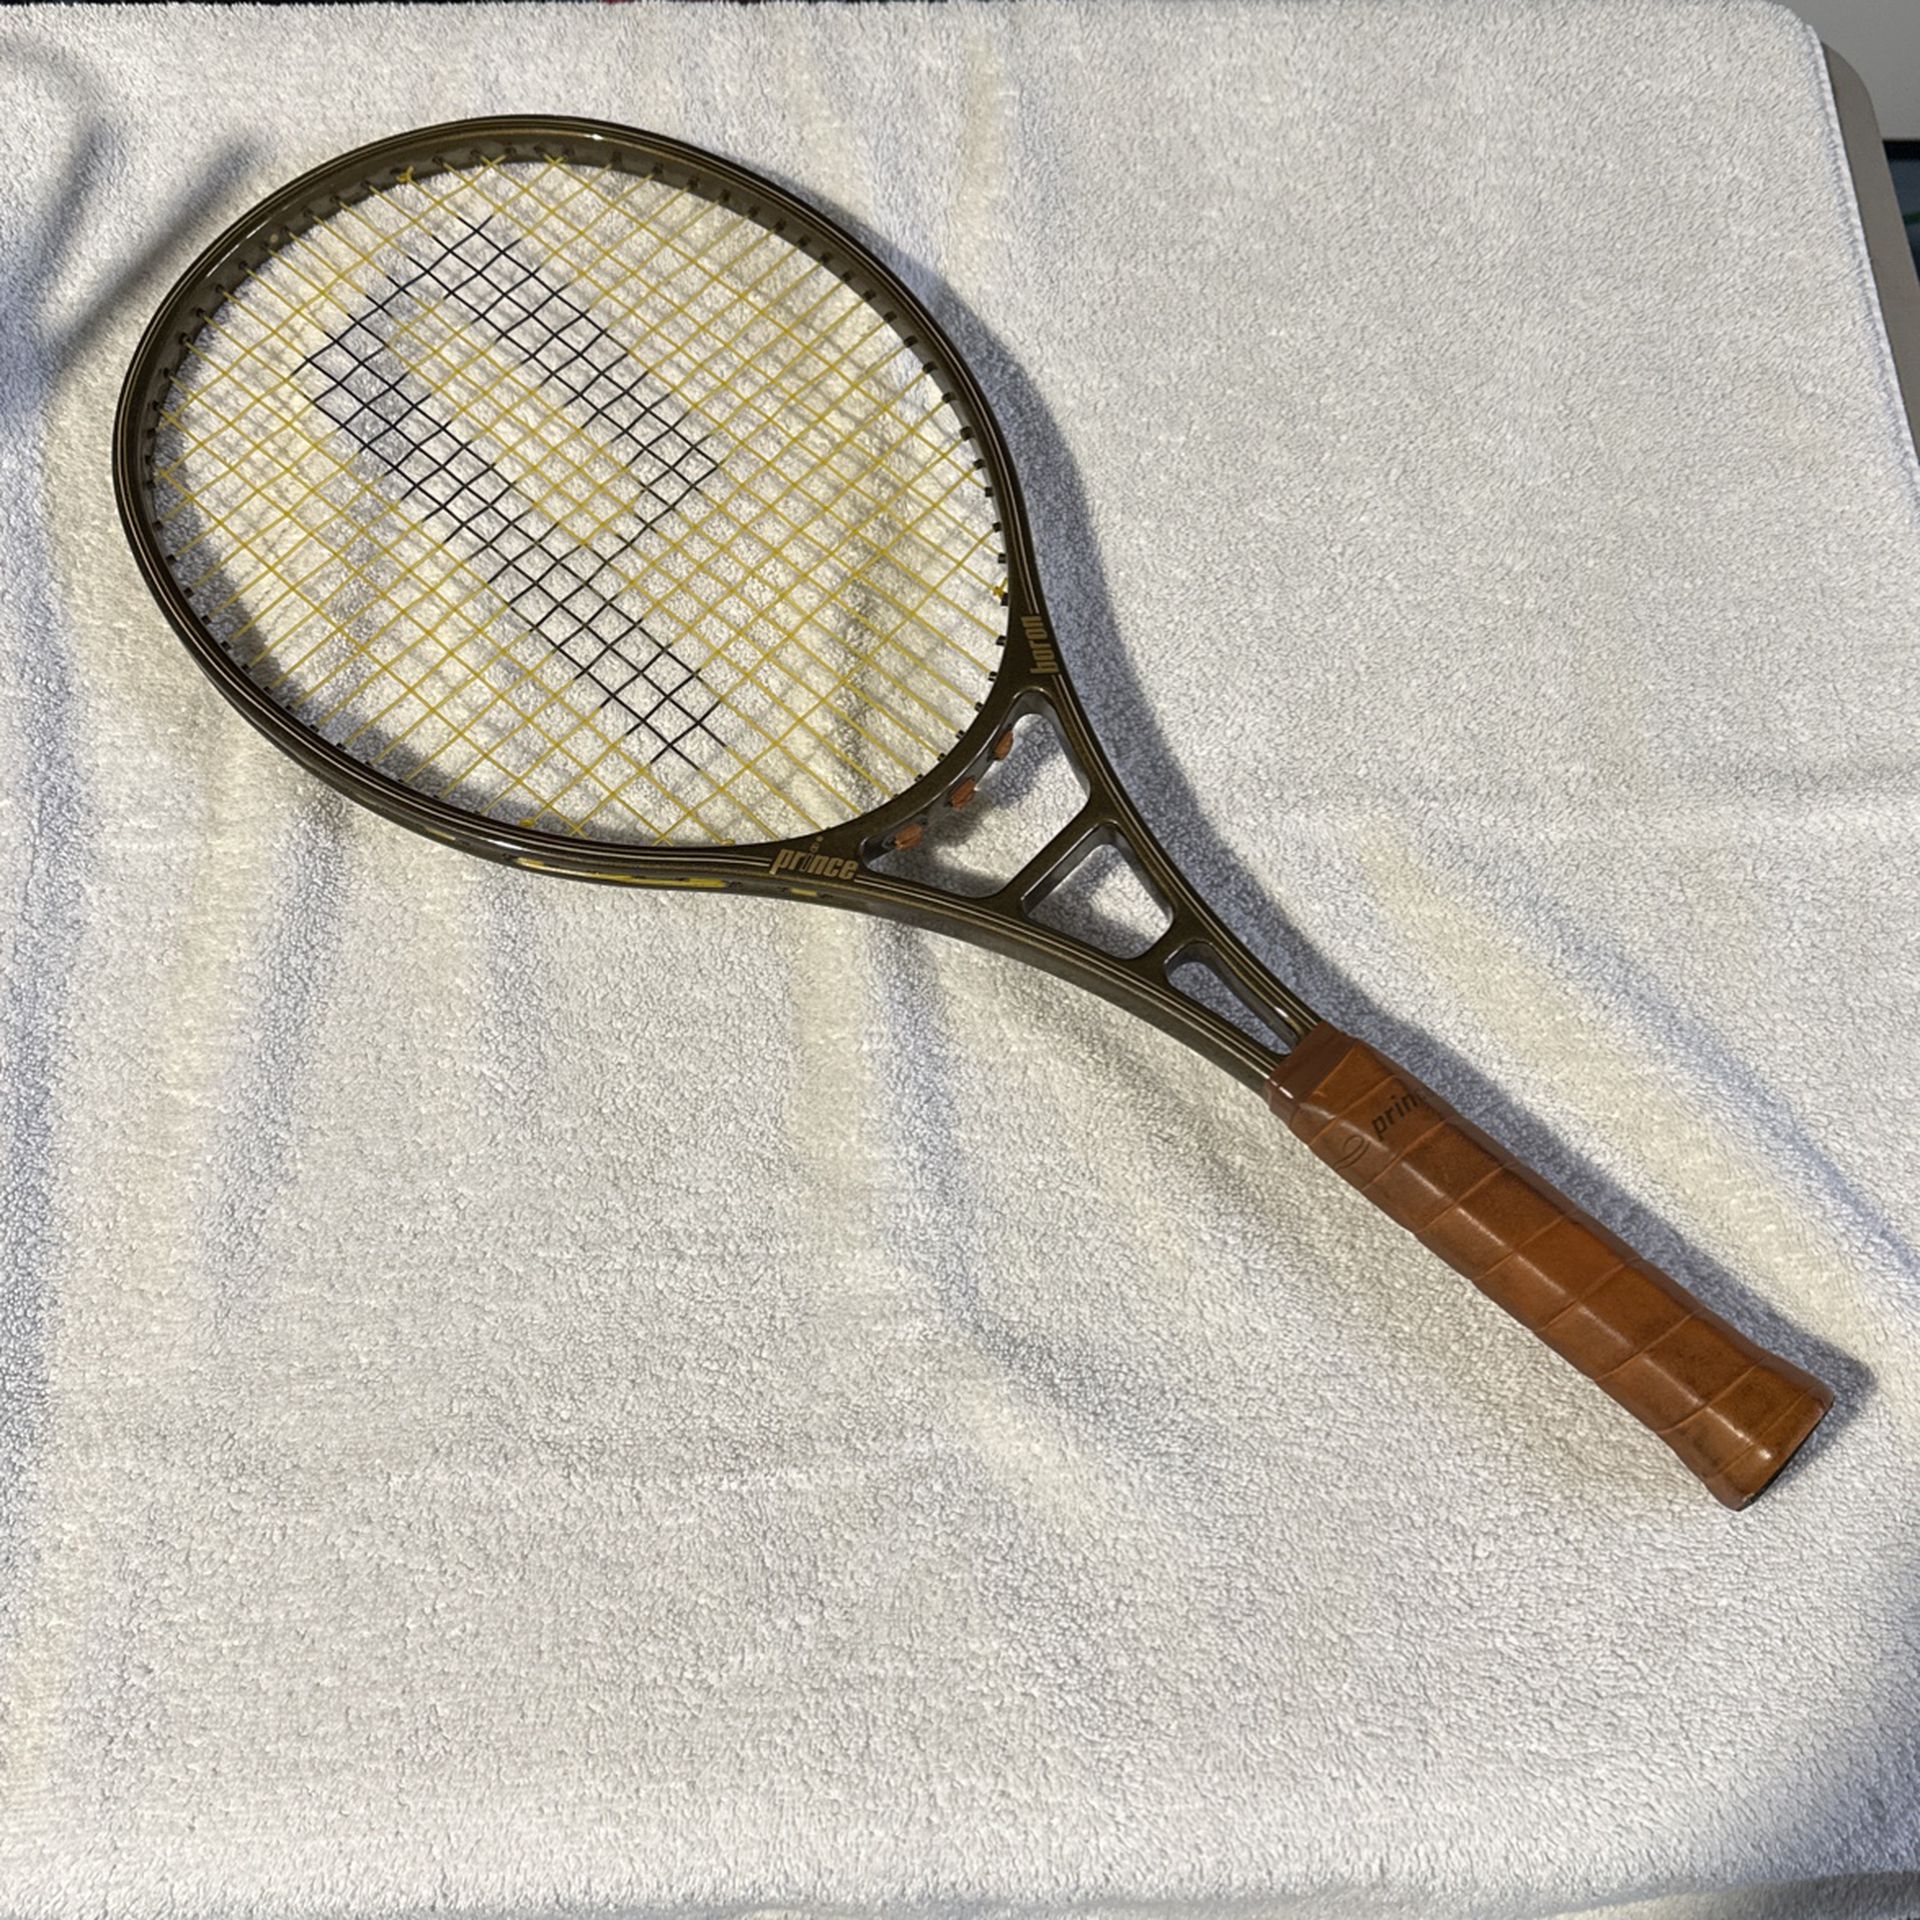 Tennis Racket - Prince Boron  (UTRA RARE) 1982